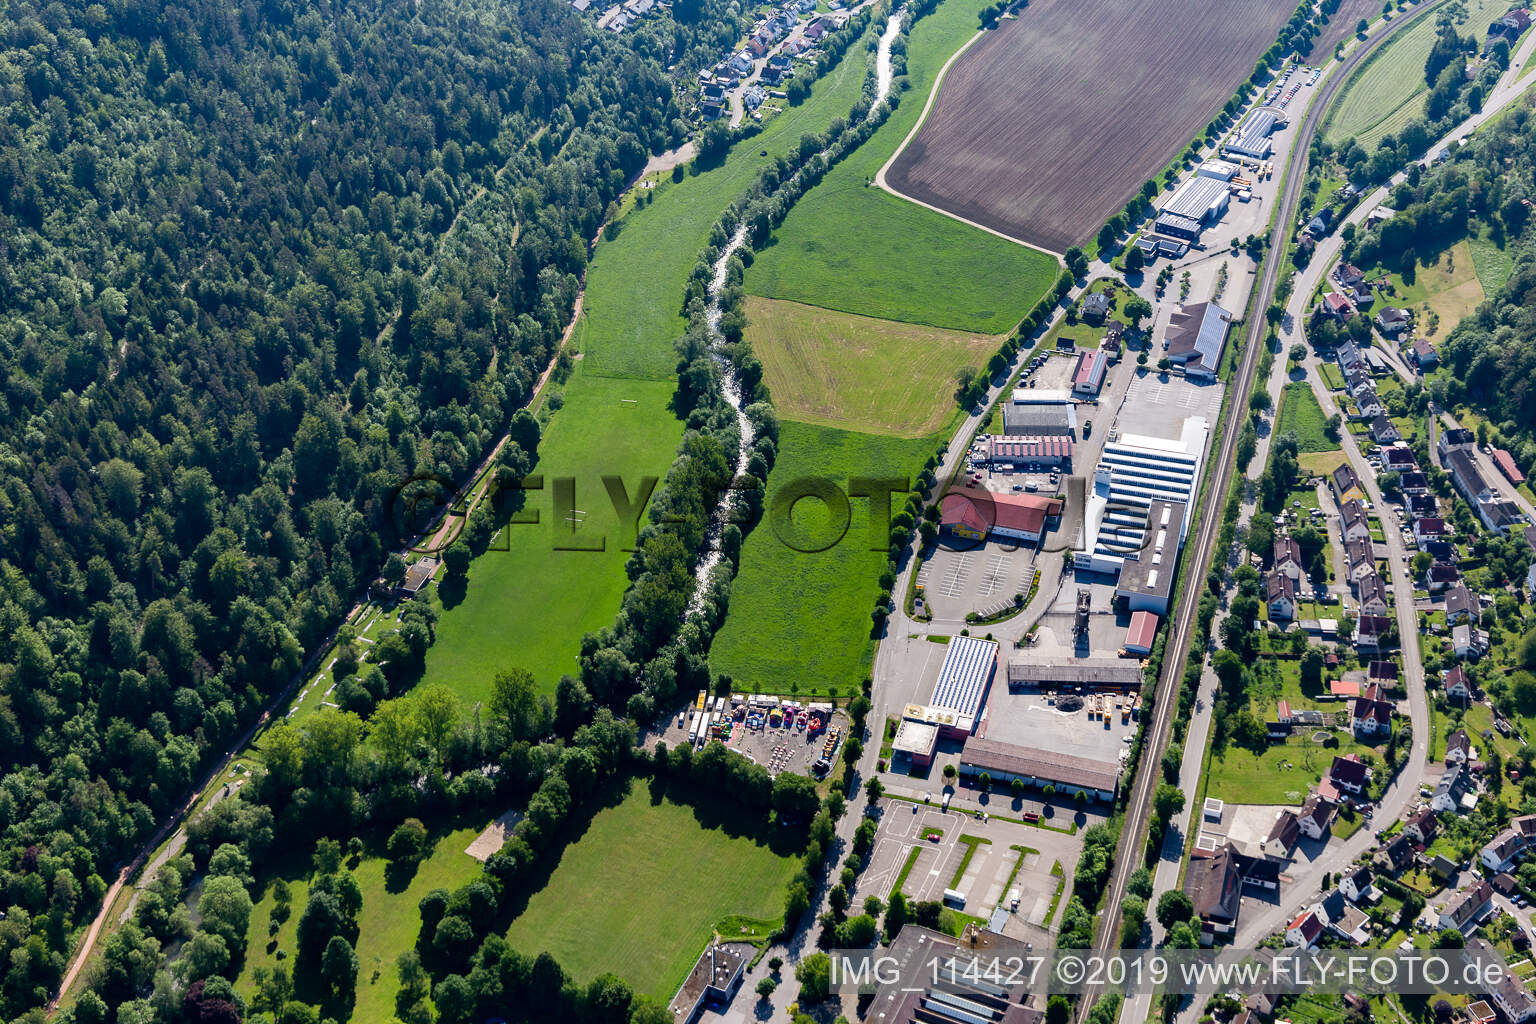 Vue aérienne de Oberndorf am Neckar dans le département Bade-Wurtemberg, Allemagne